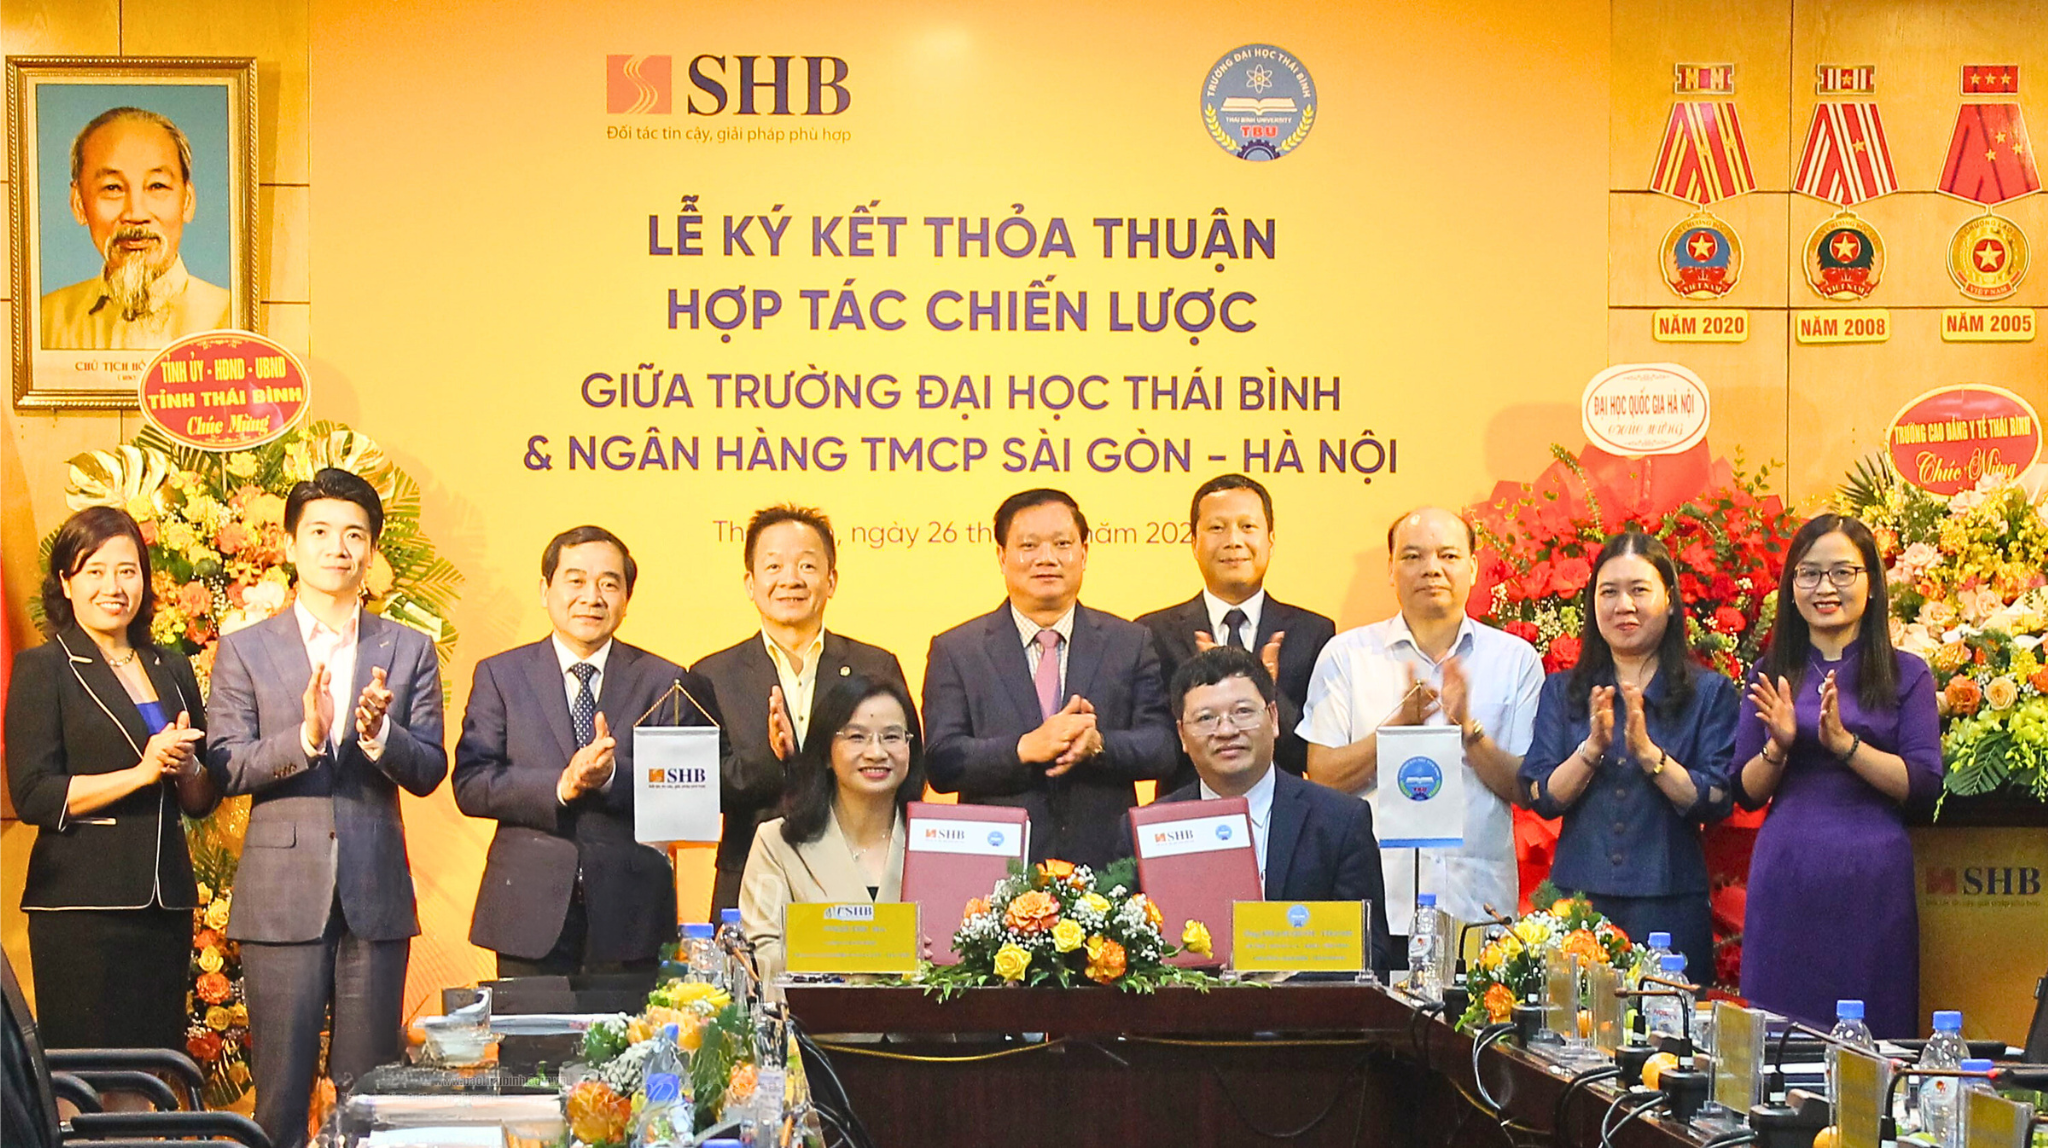 SHB hợp tác với Đại học Thái Bình nâng cao chất lượng đào tạo